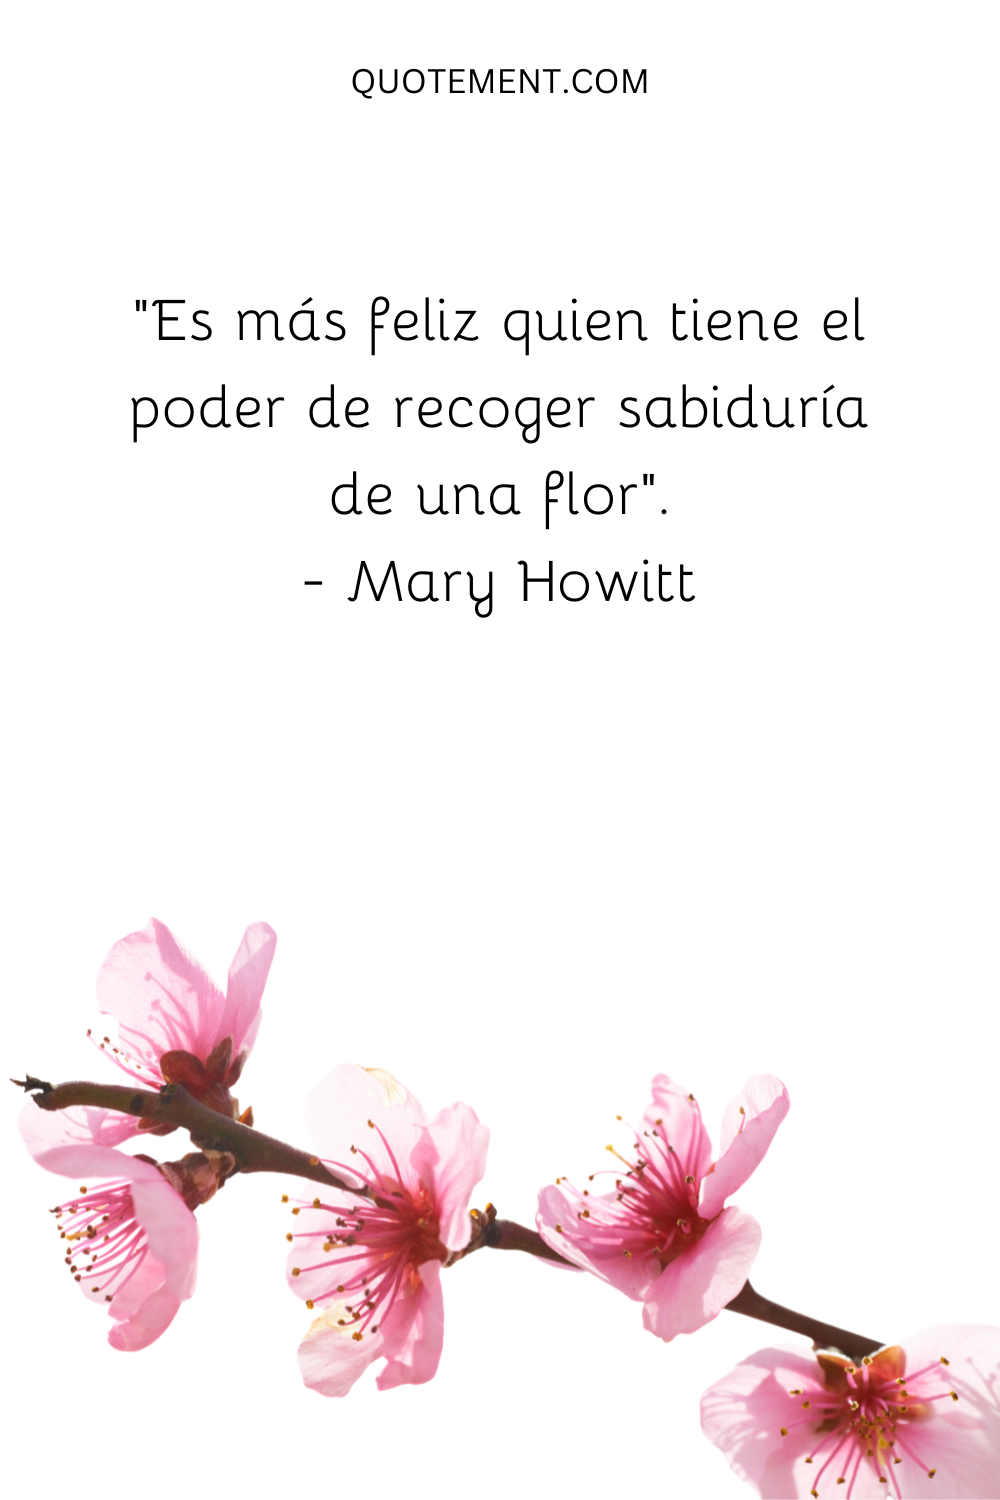 "Es más feliz quien tiene el poder de recoger sabiduría de una flor". - Mary Howitt